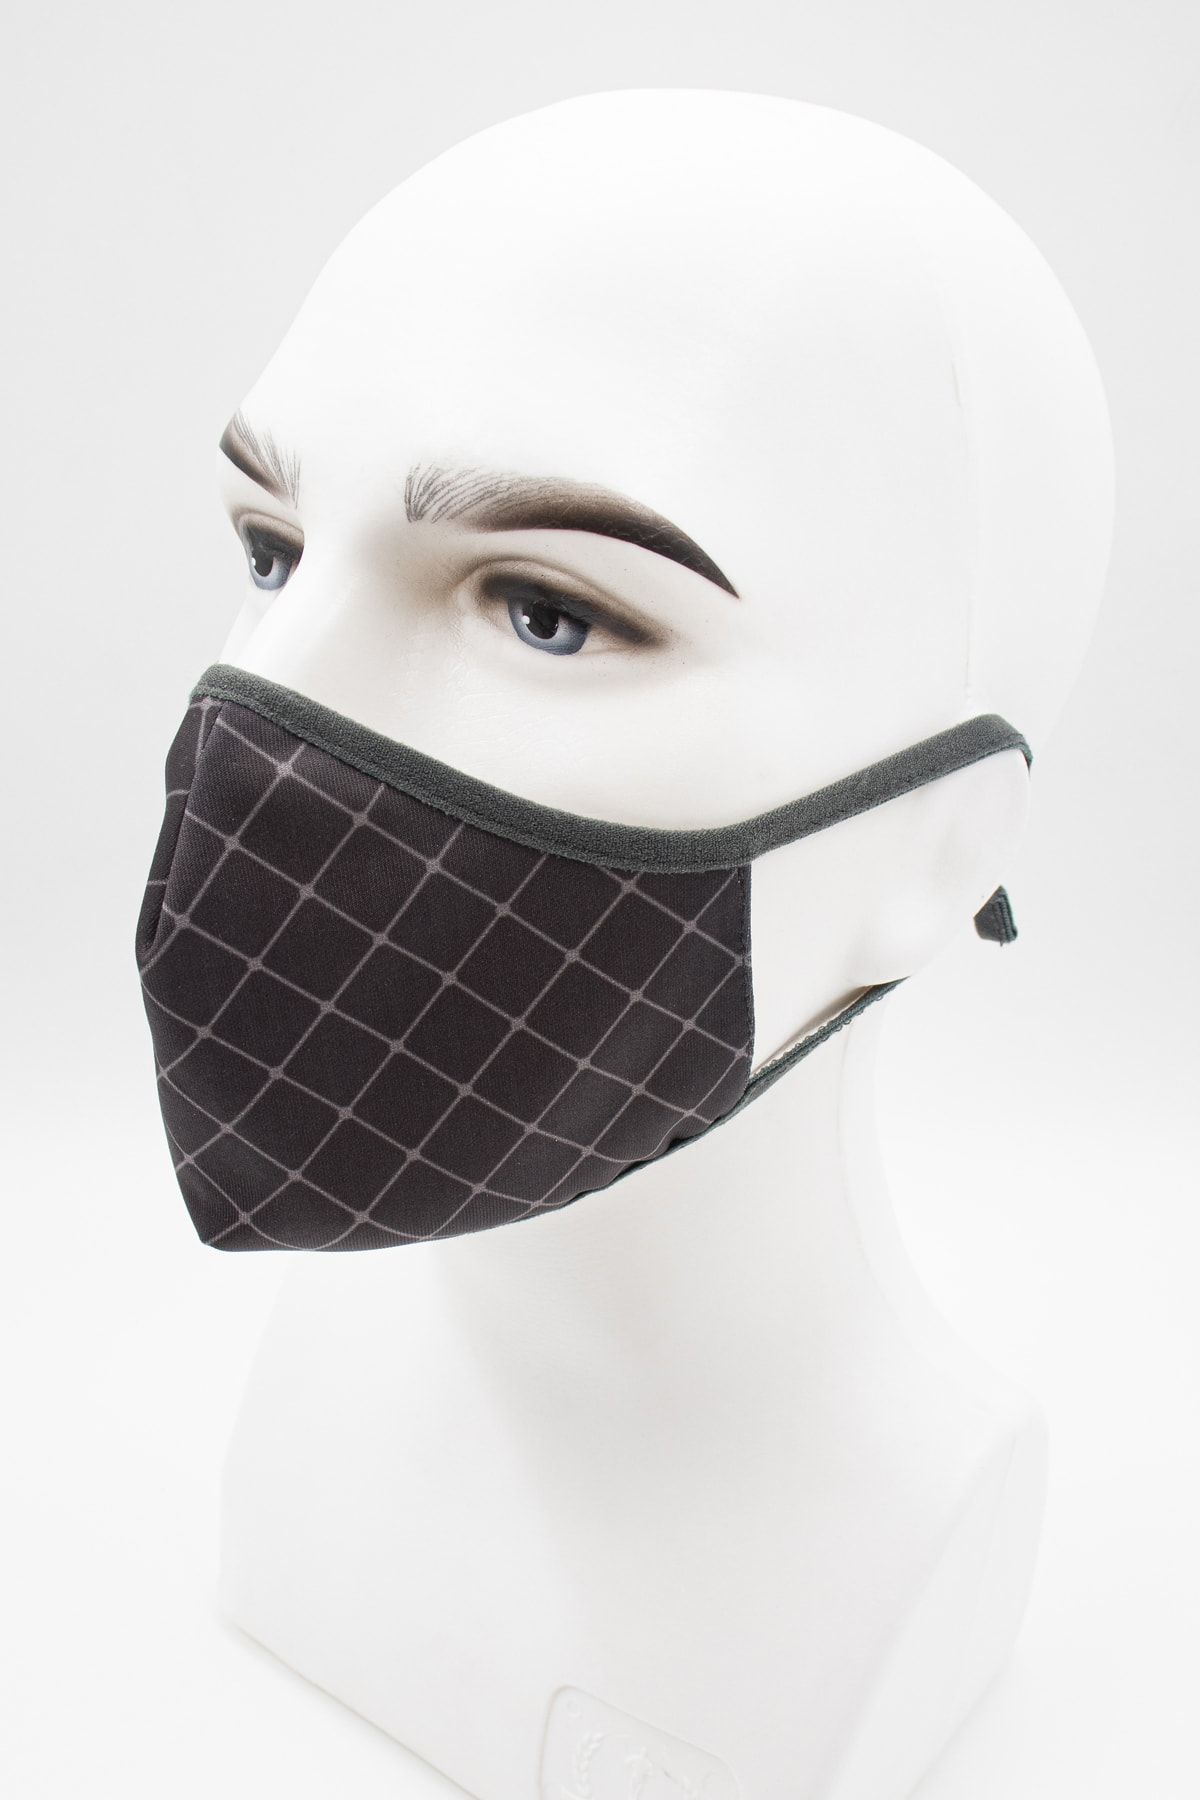 Daima Sağlık Provizyon Maske Kareli Desenli Kulak Boyu Ayarlanabilir Gri Renkli Mikro Kumaş Yıkanabilir Maske